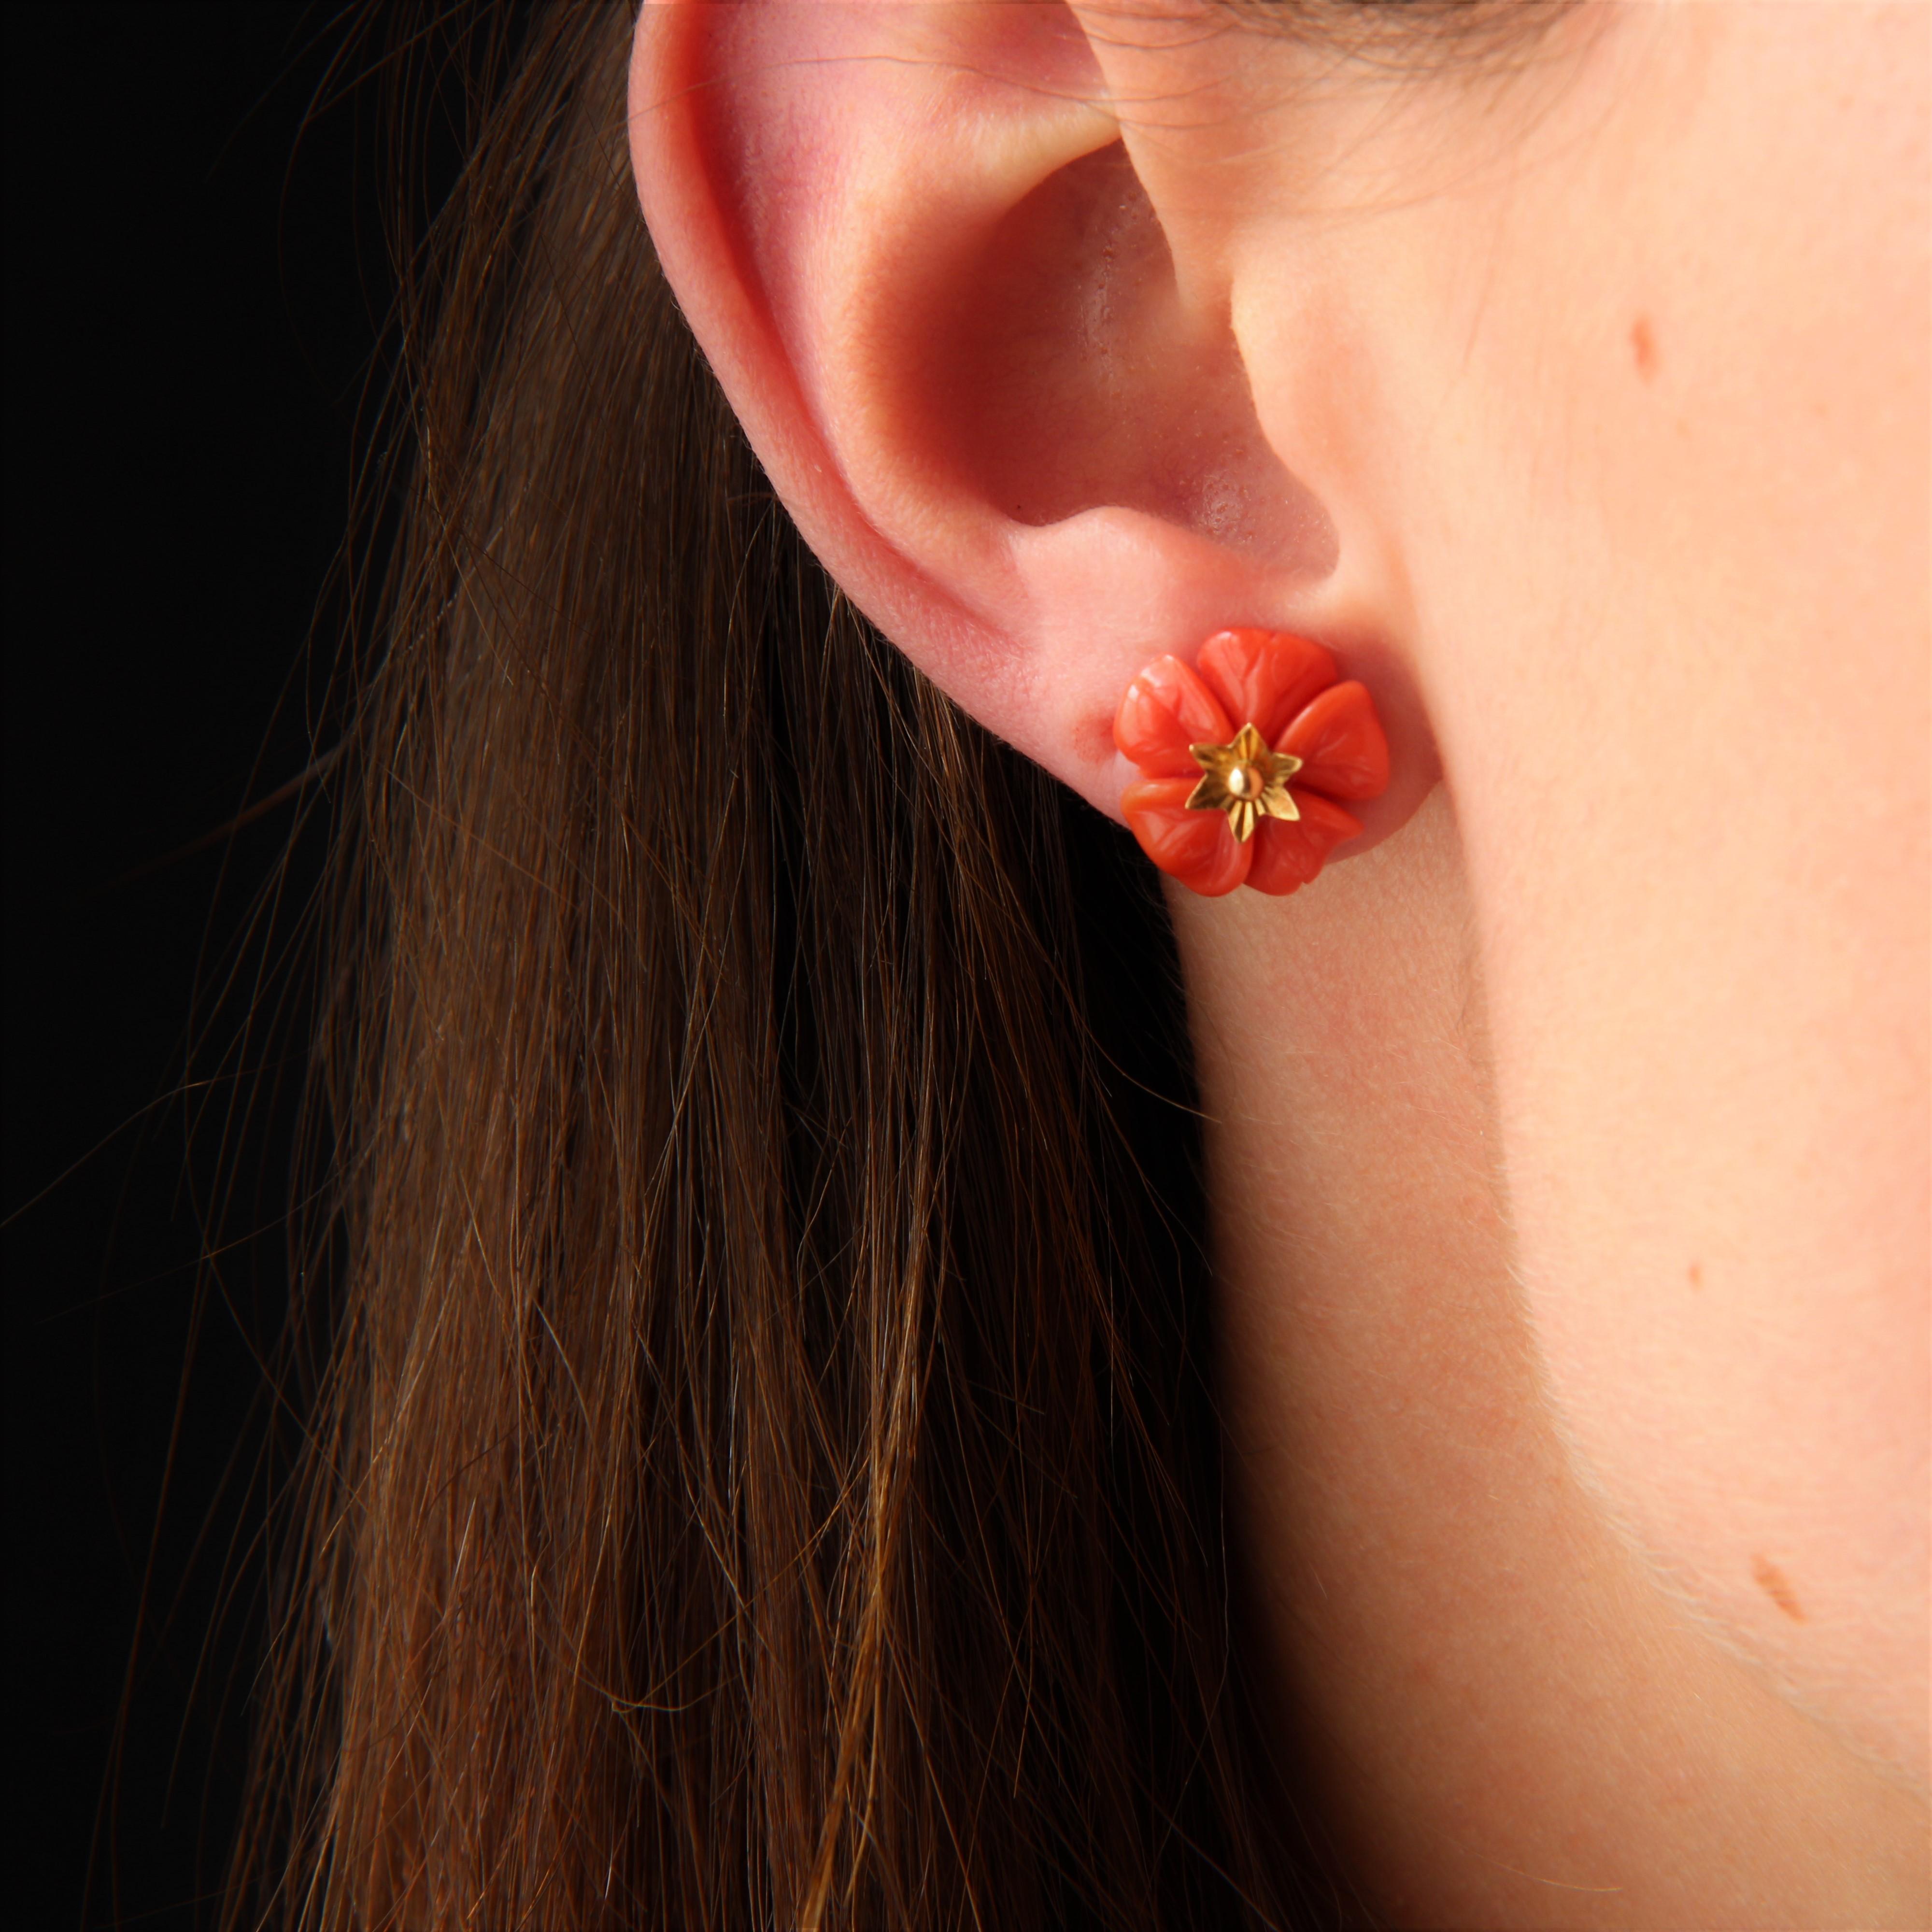 Für gepiercte Ohren.
Ohrringe aus 18 Karat Gelbgold.
Diese Ohrringe aus Koralle und Gold bestehen aus einer eingravierten Korallenblume, die von einem Ohrstecker durchbrochen wird, der mit einem kleinen ziselierten Goldstern verziert ist. Der